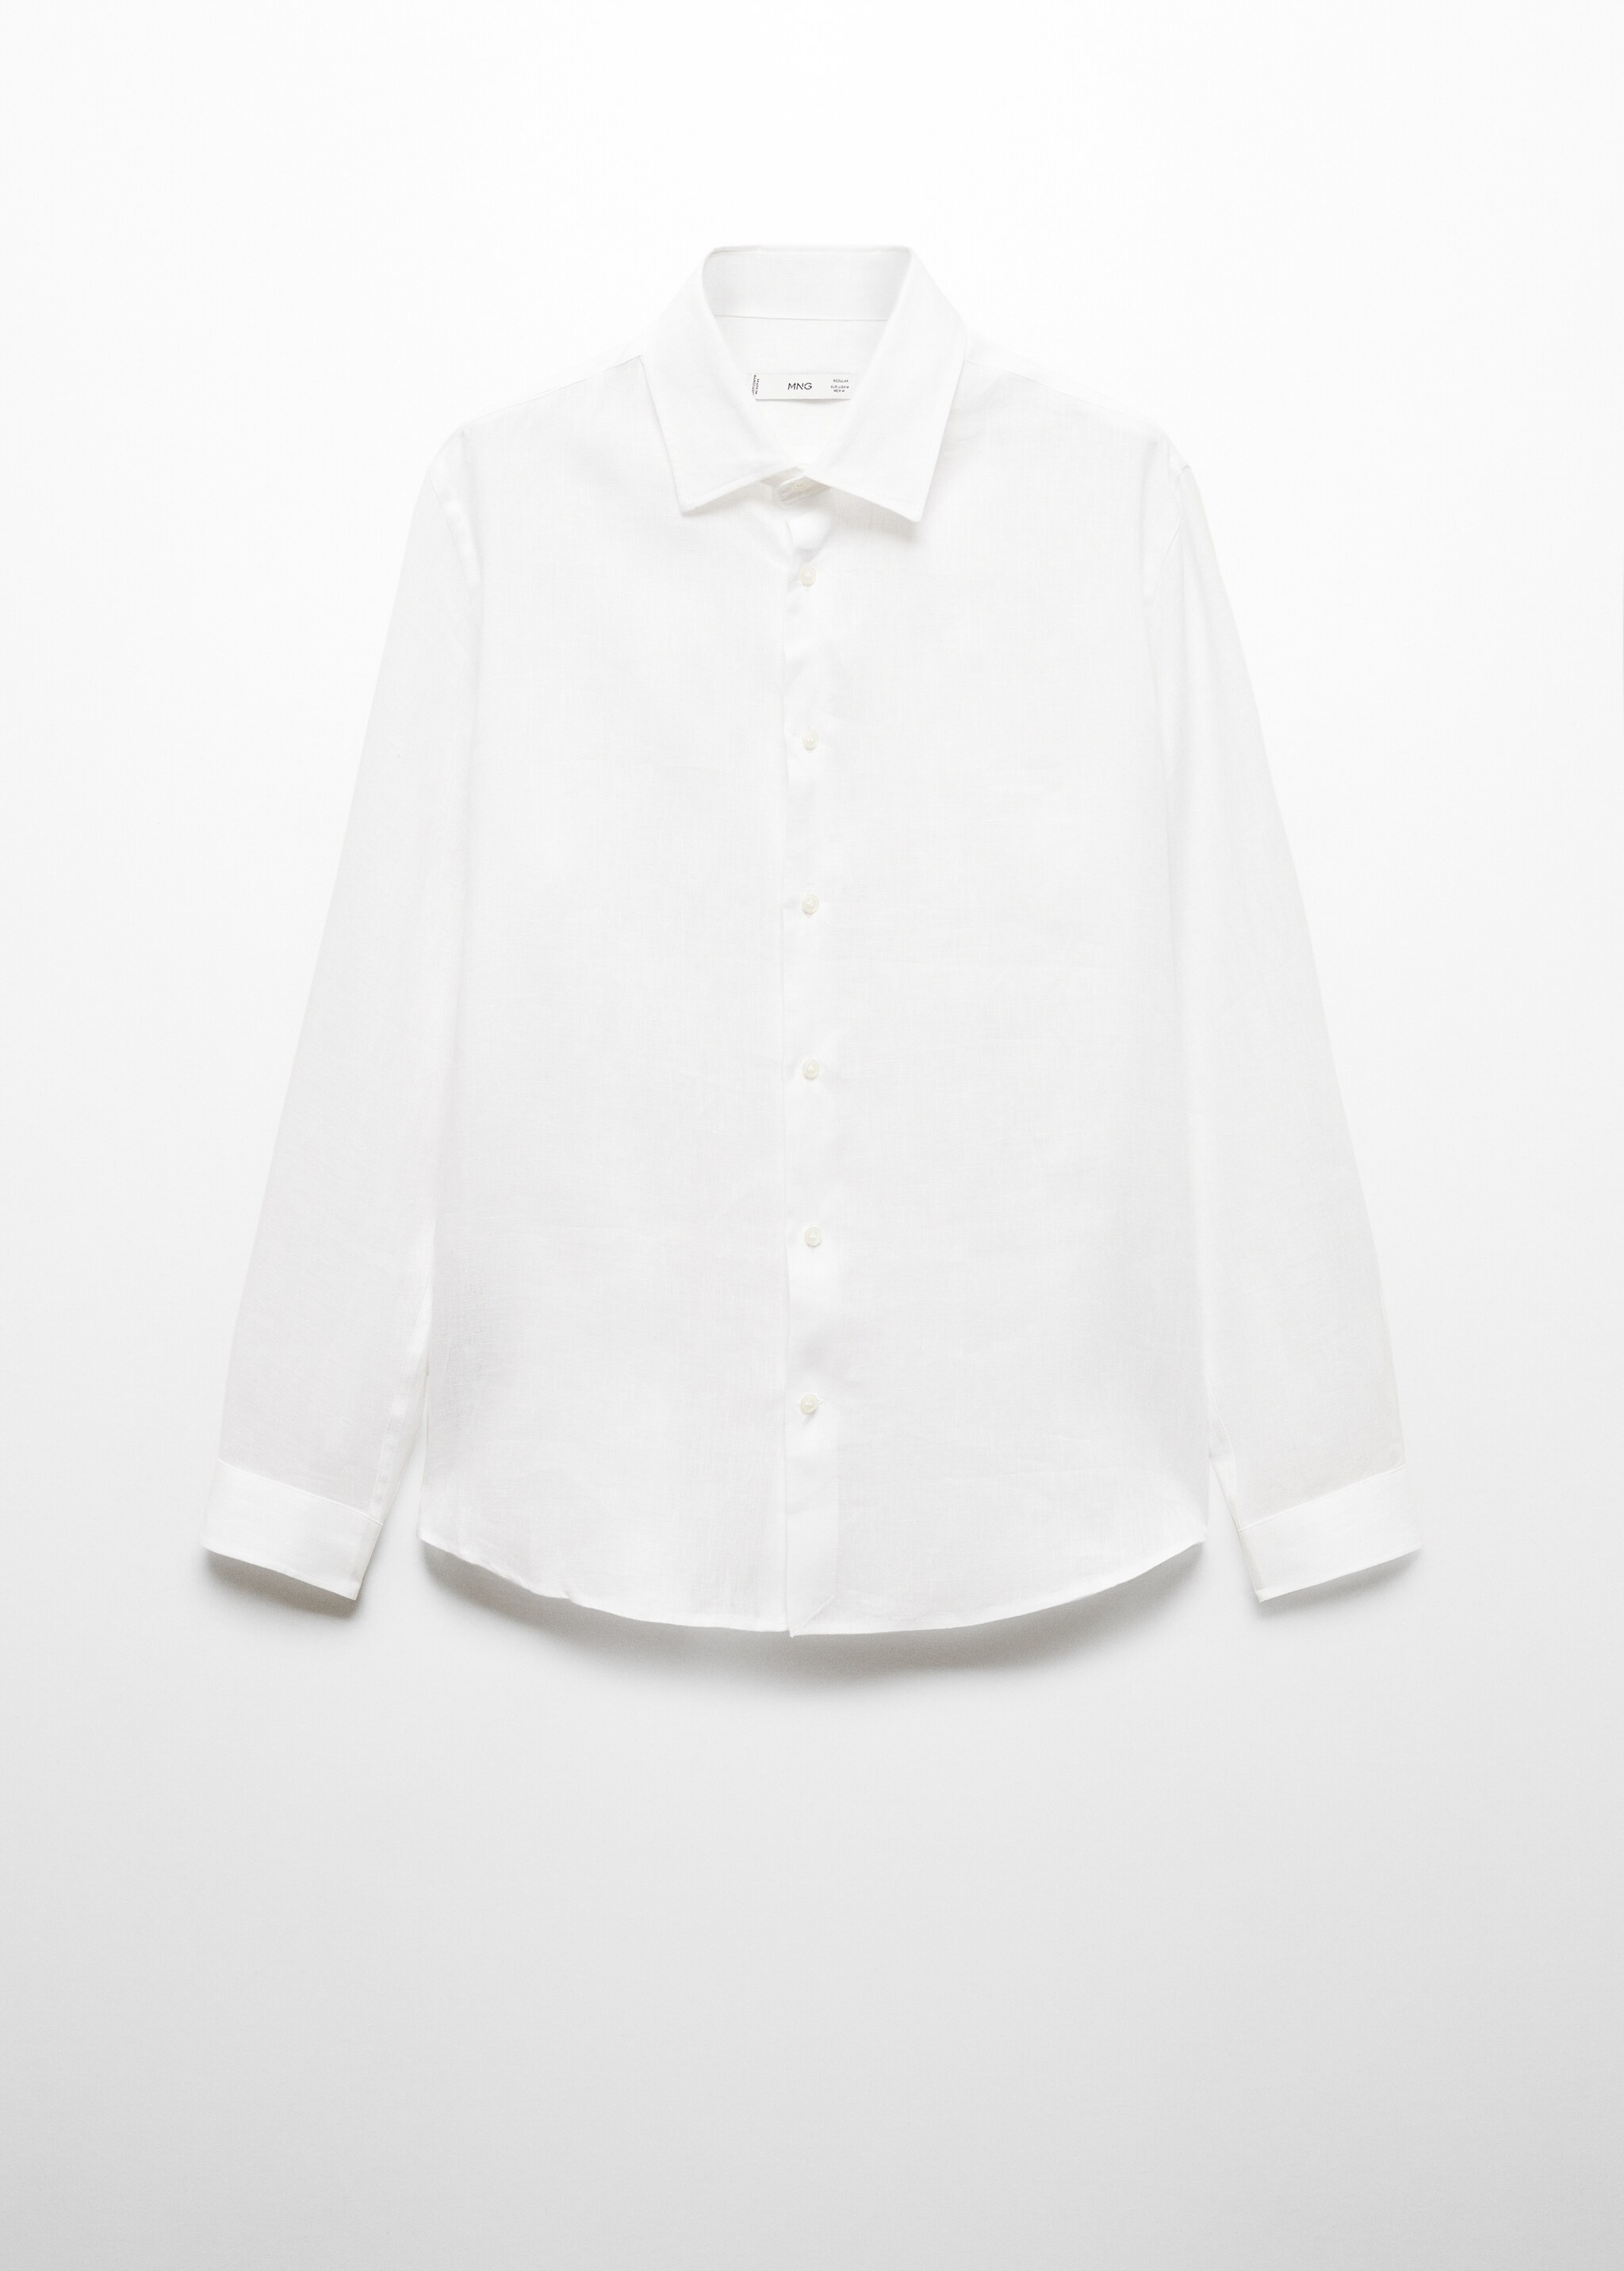 Рубашка regular fit 100% лен - Изделие без модели